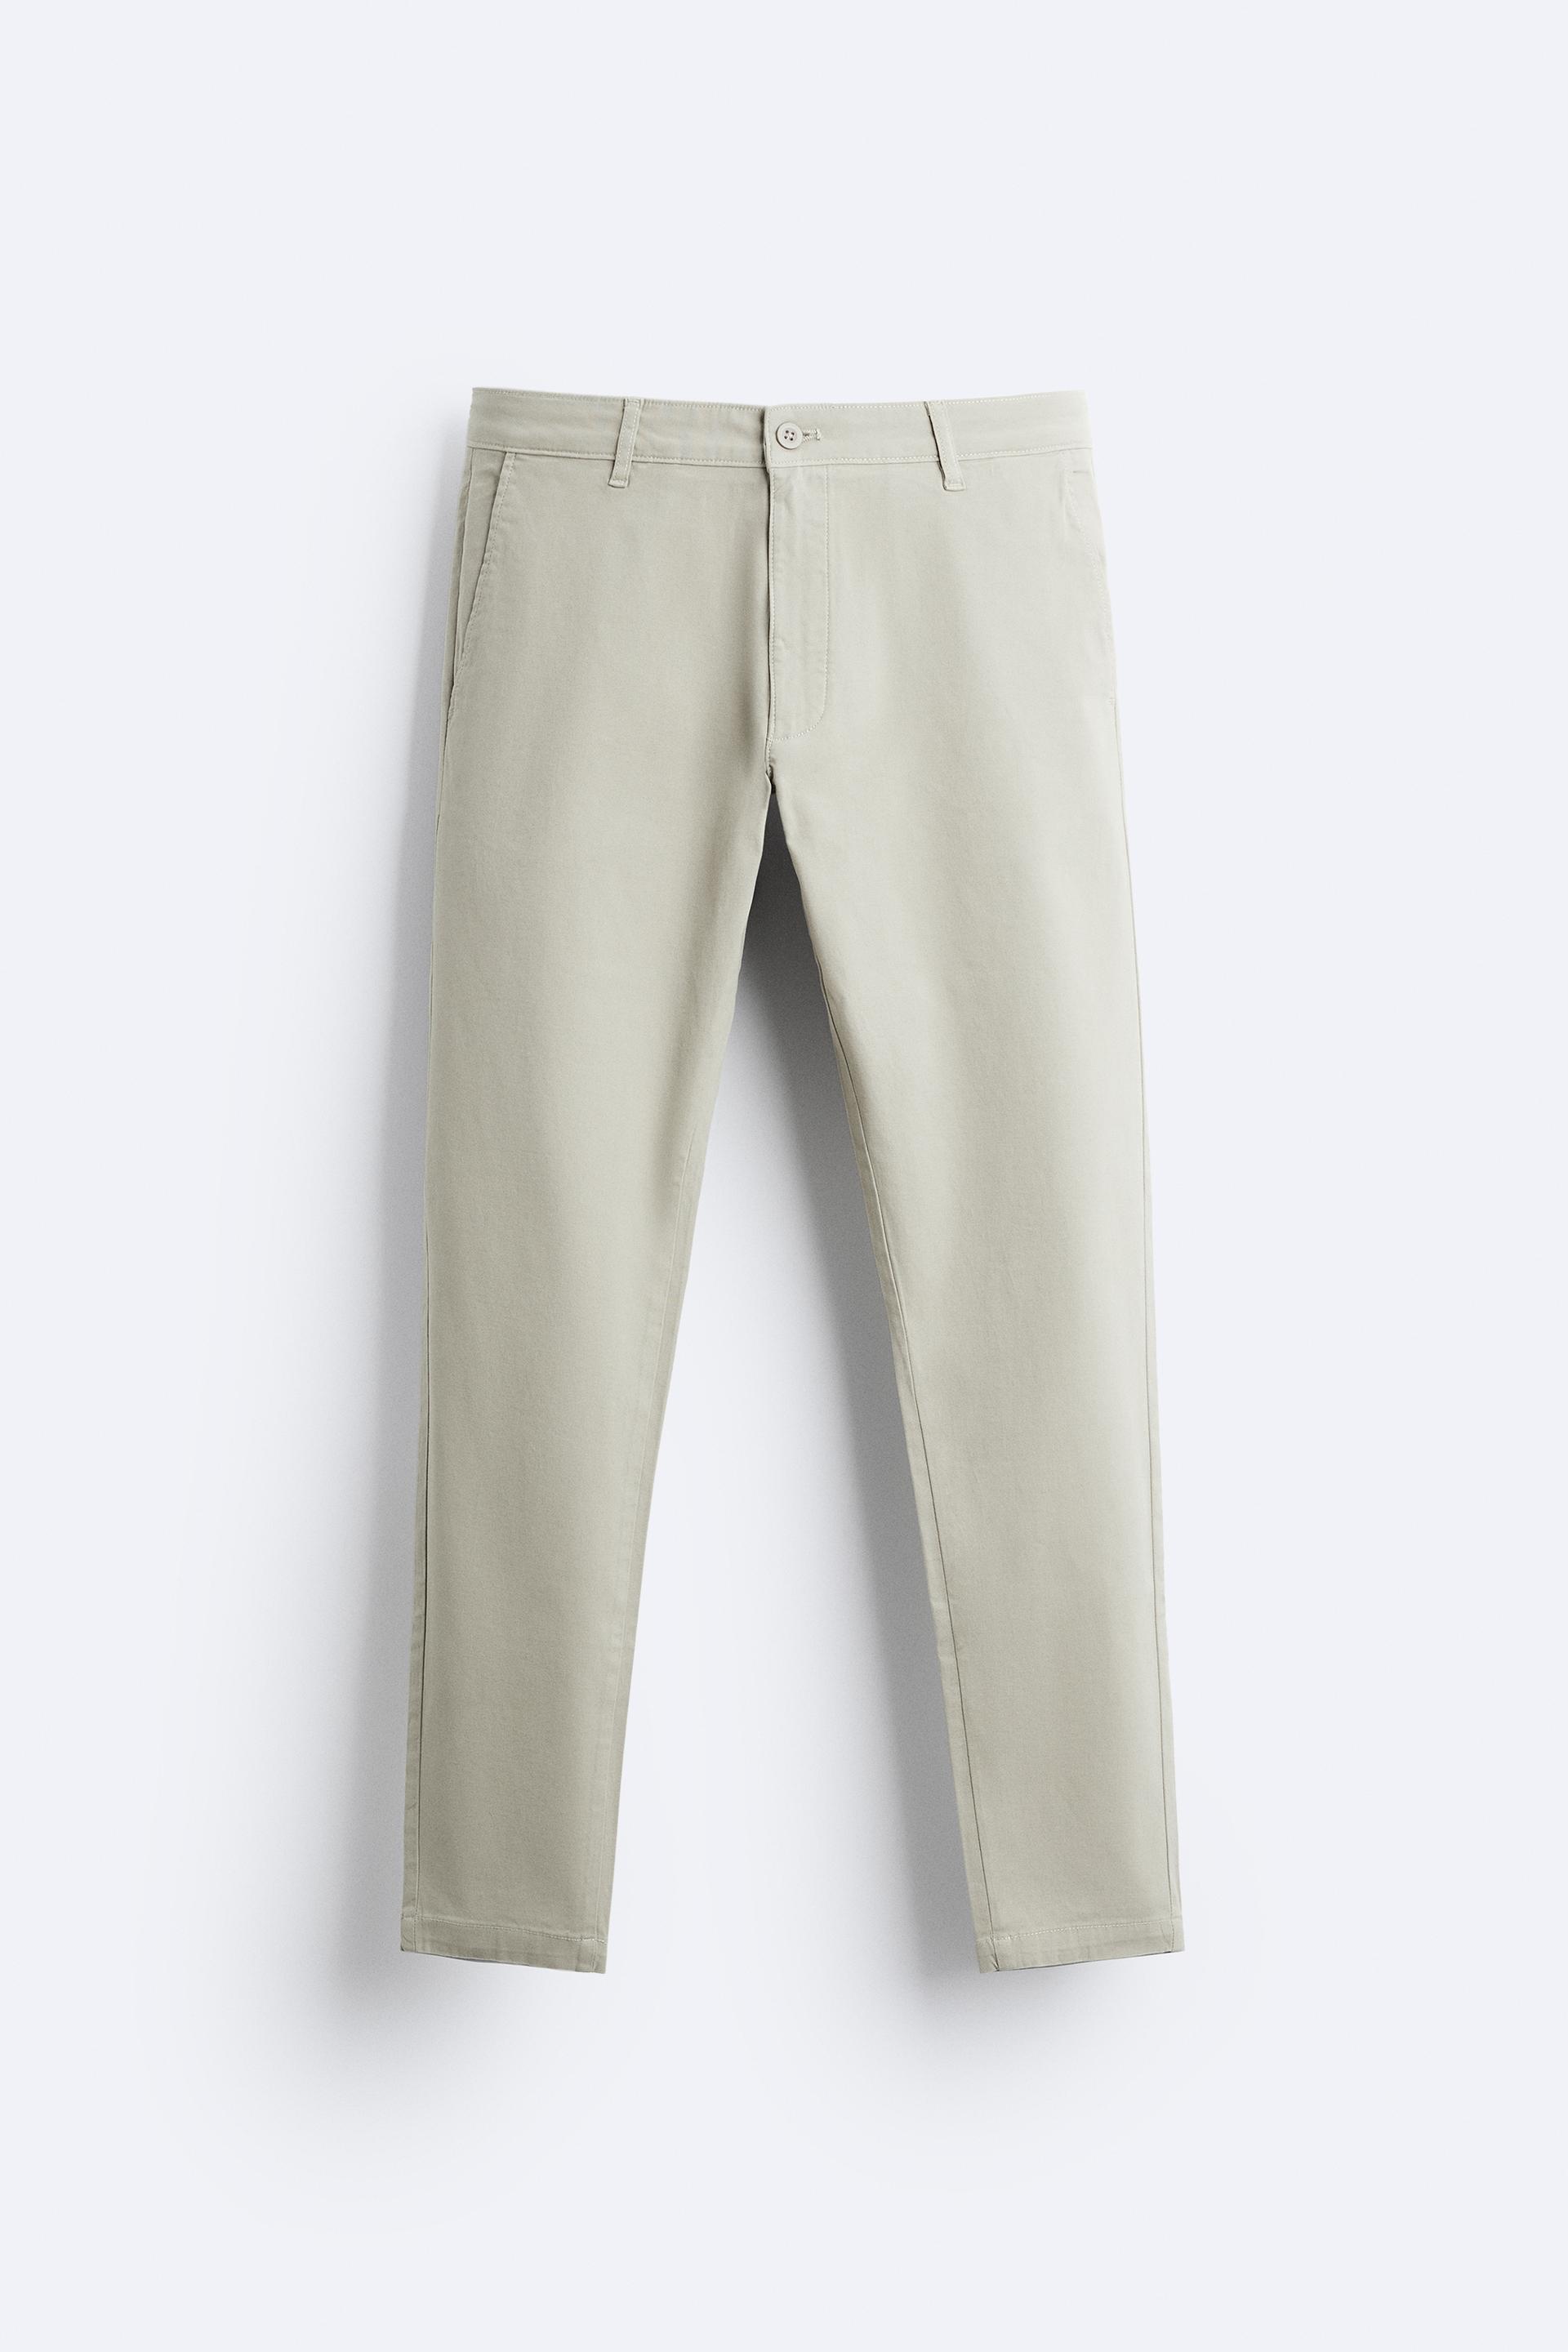 Las mejores ofertas en Pantalones tipo chino de algodón Zara para